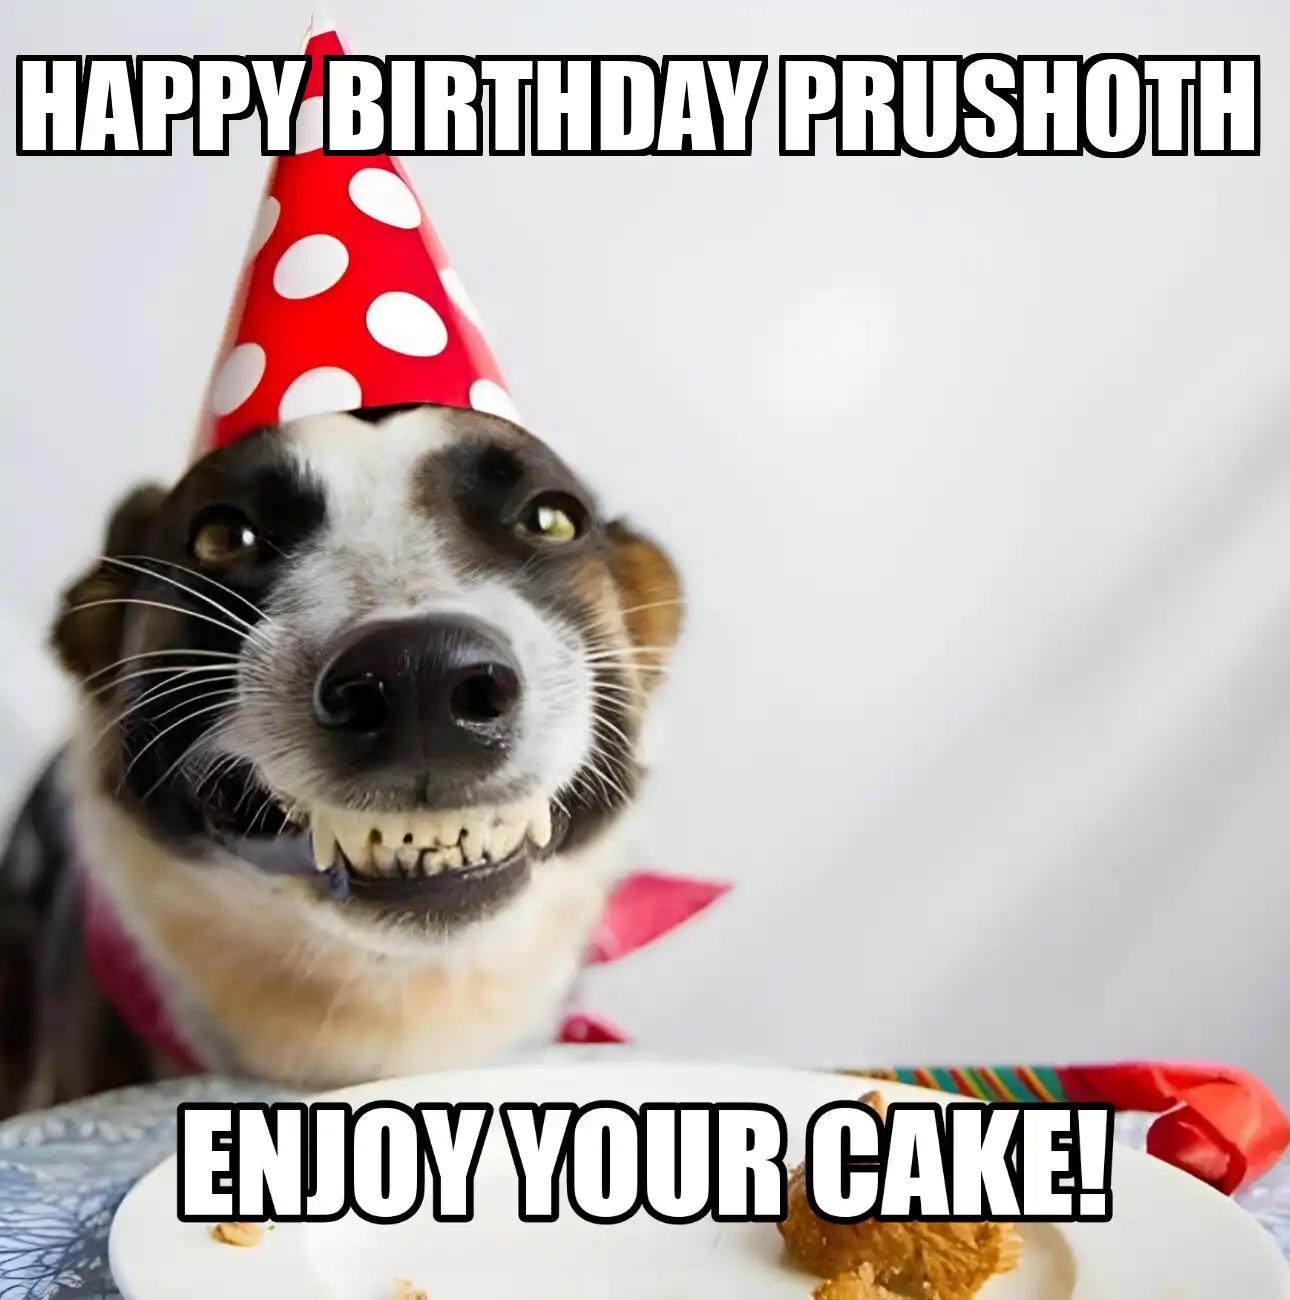 Happy Birthday Prushoth Enjoy Your Cake Dog Meme